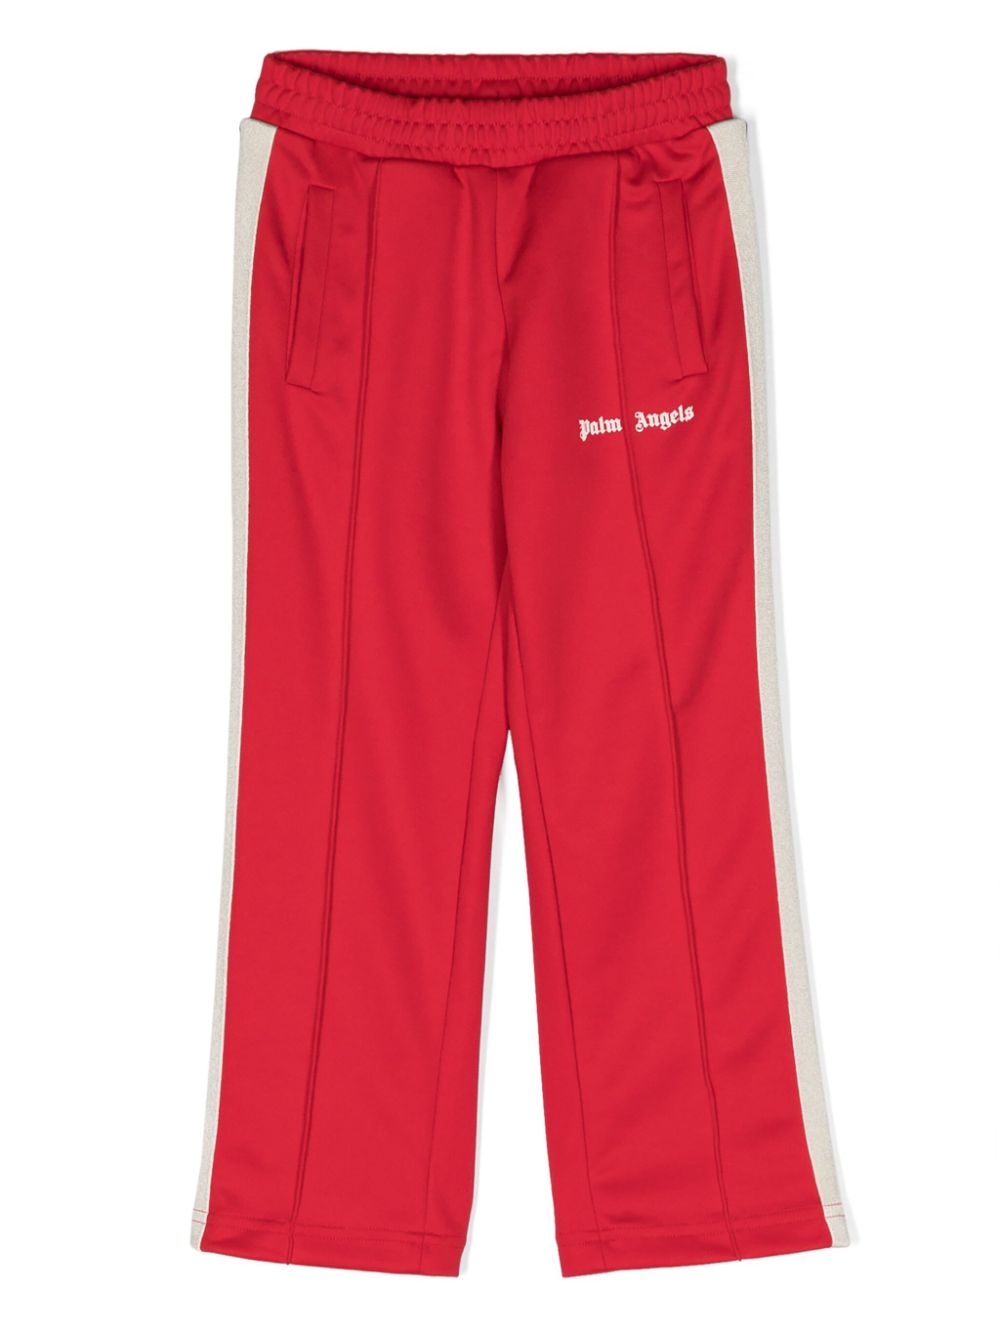 Pantalone sportivo rosso per bambino con logo